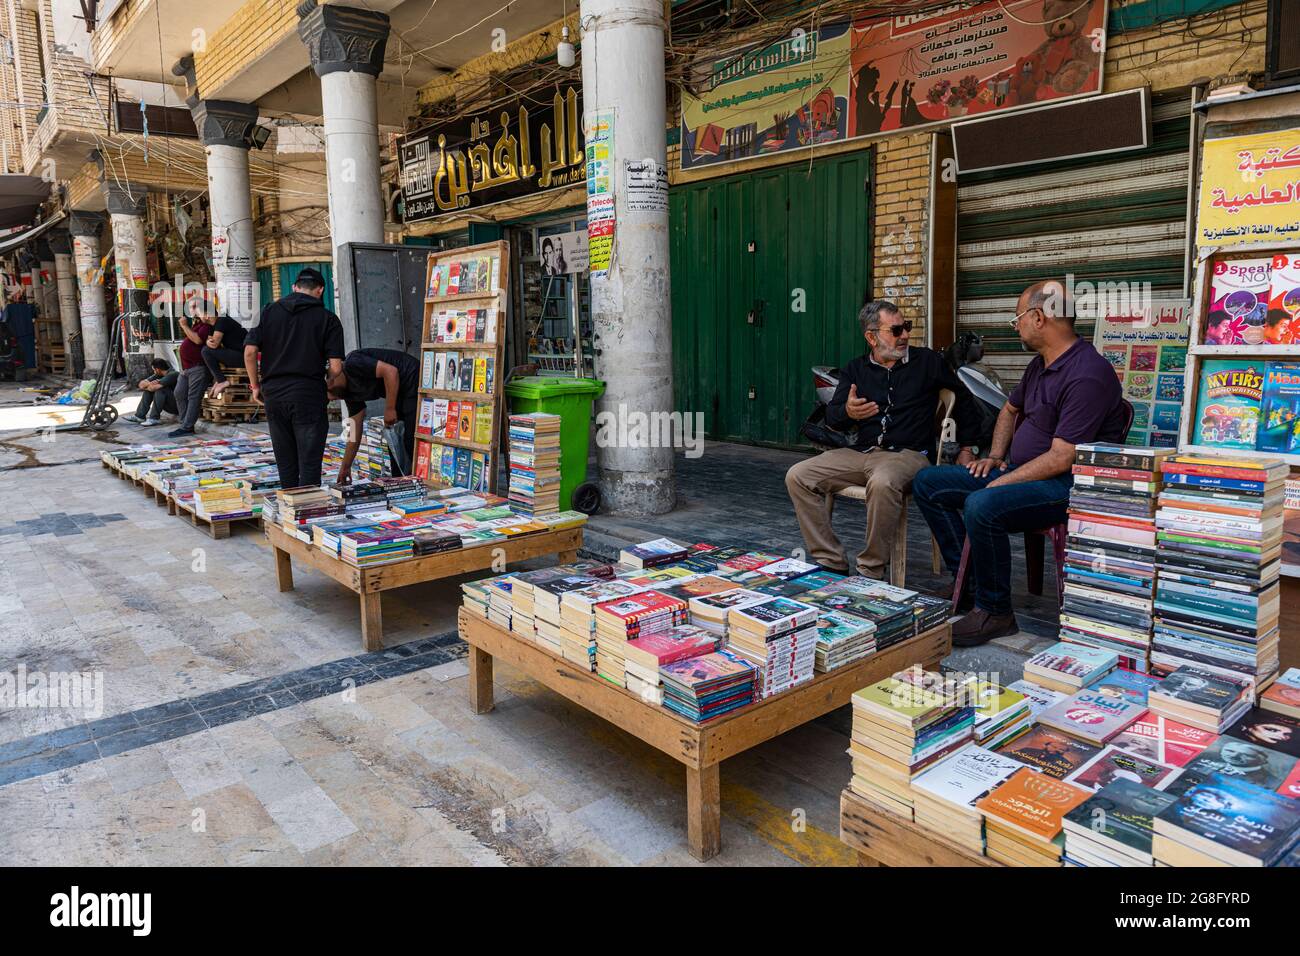 book-market-baghdad-iraq-middle-east-2G8FYRD.jpg